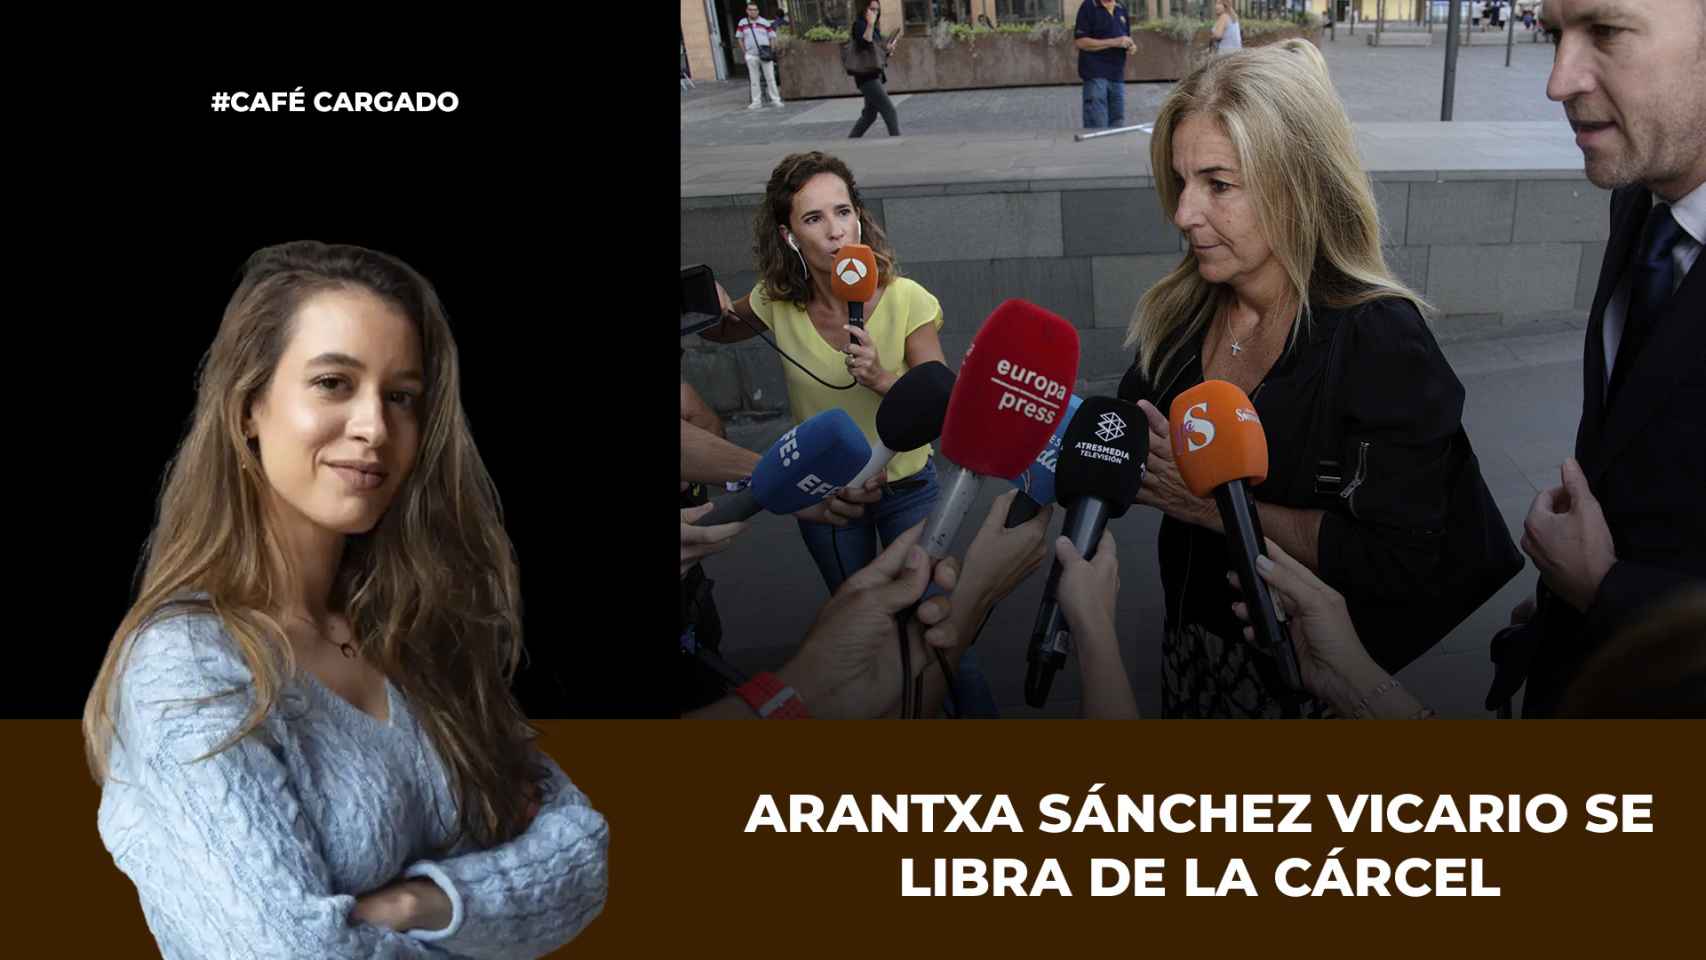 Sara Cid explica el juicio a Arantxa Sánchez Vicario en La hora del café cargado